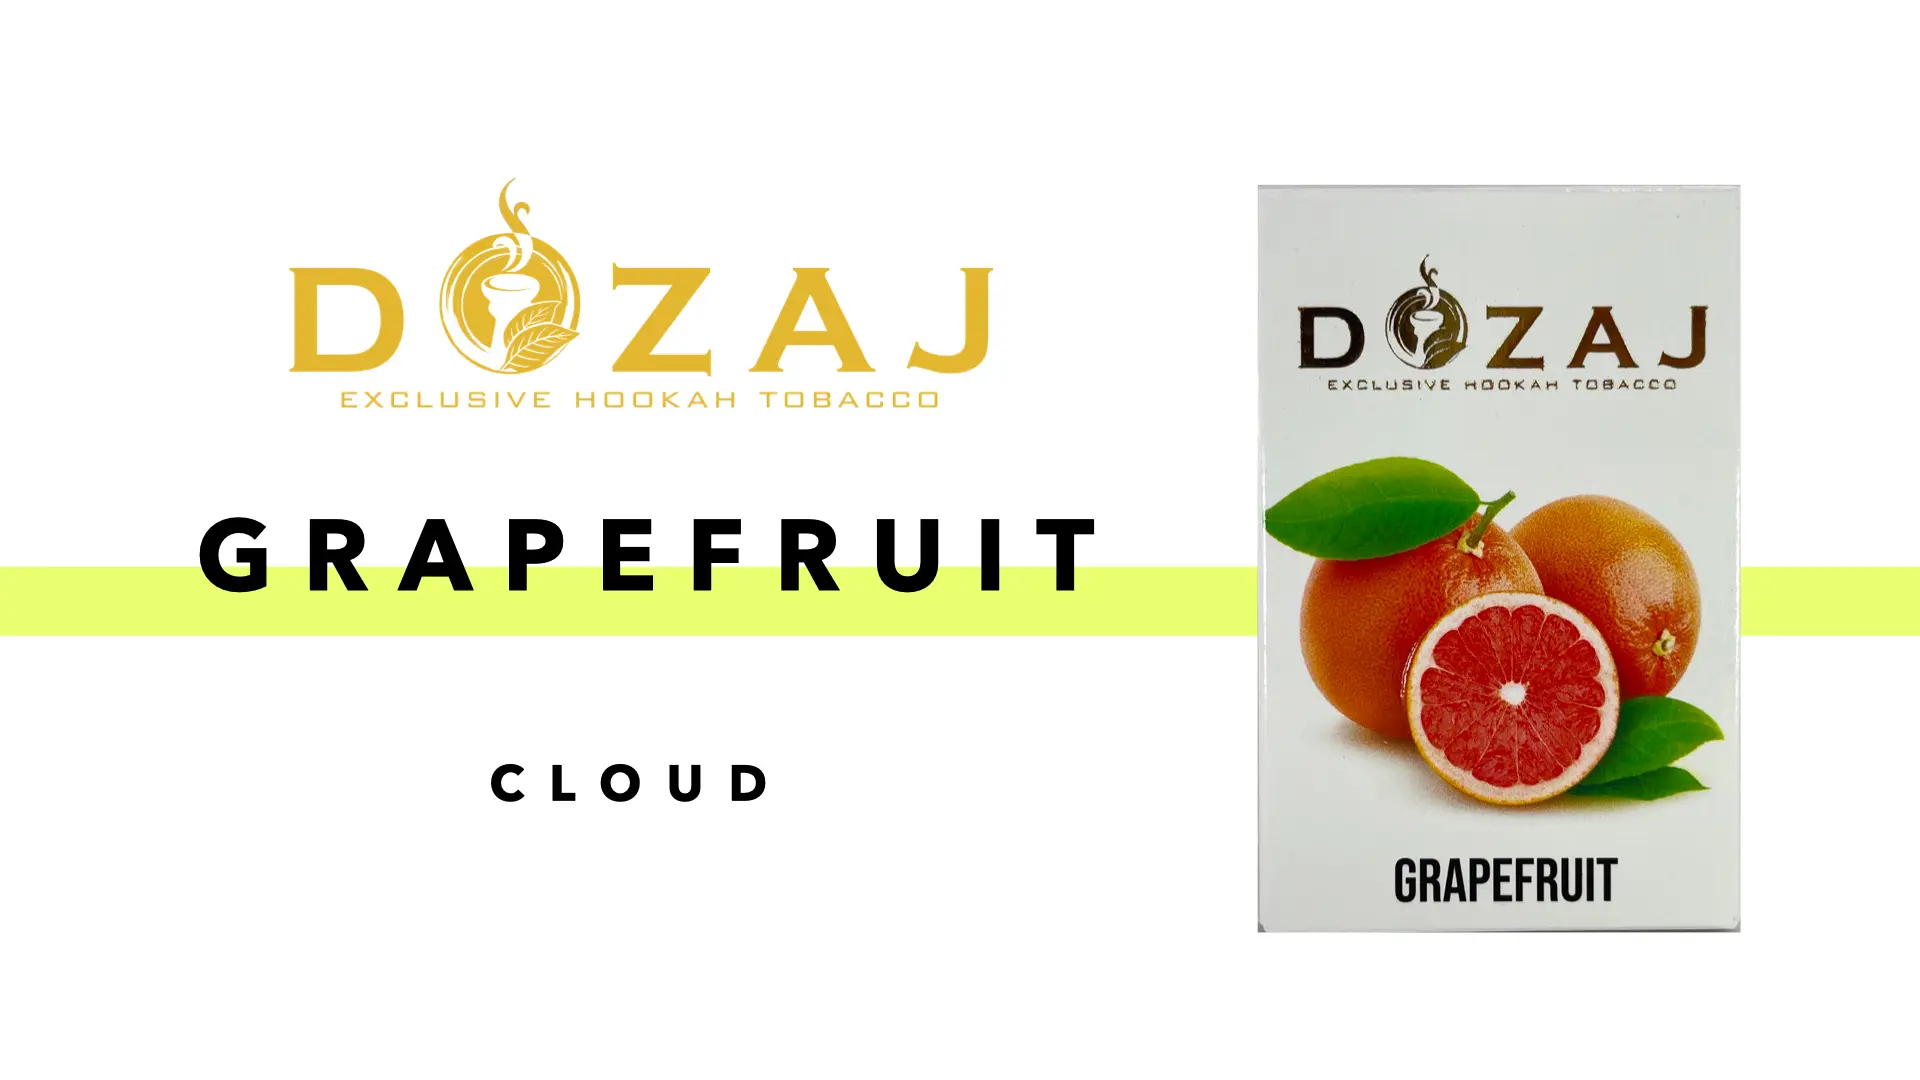 DOZAJ ドザジ grapefruit グレープフルーツ フレーバーレビュー